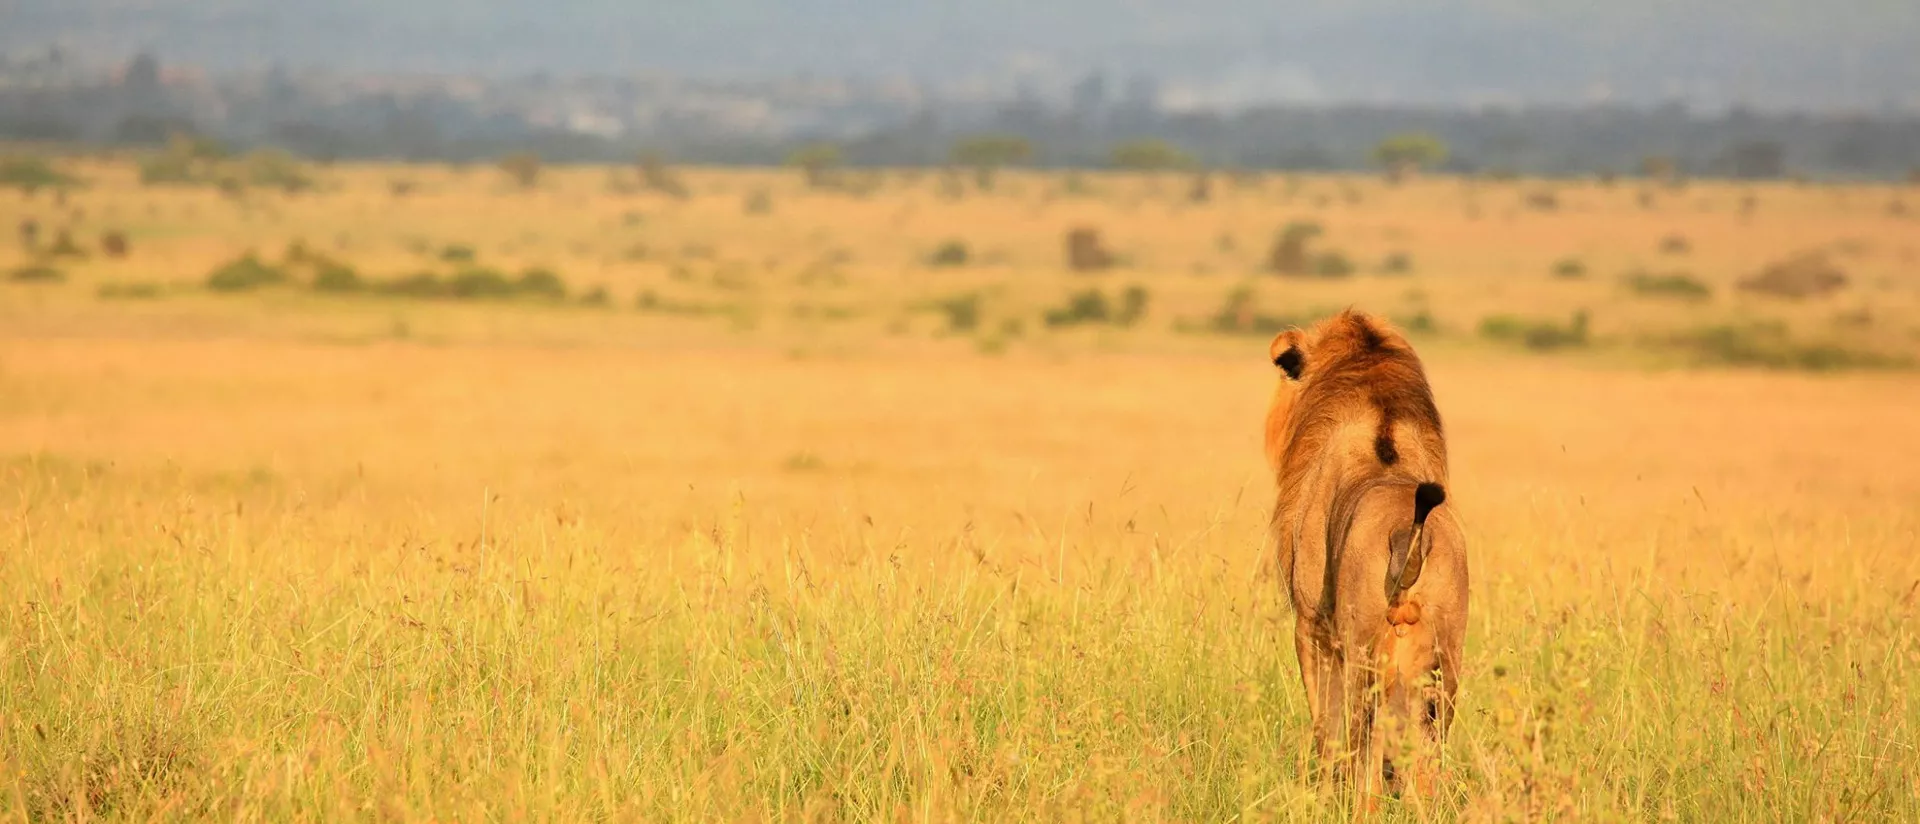 Nairobi in Kenya, Africa | Parks,Safari - Rated 5.4